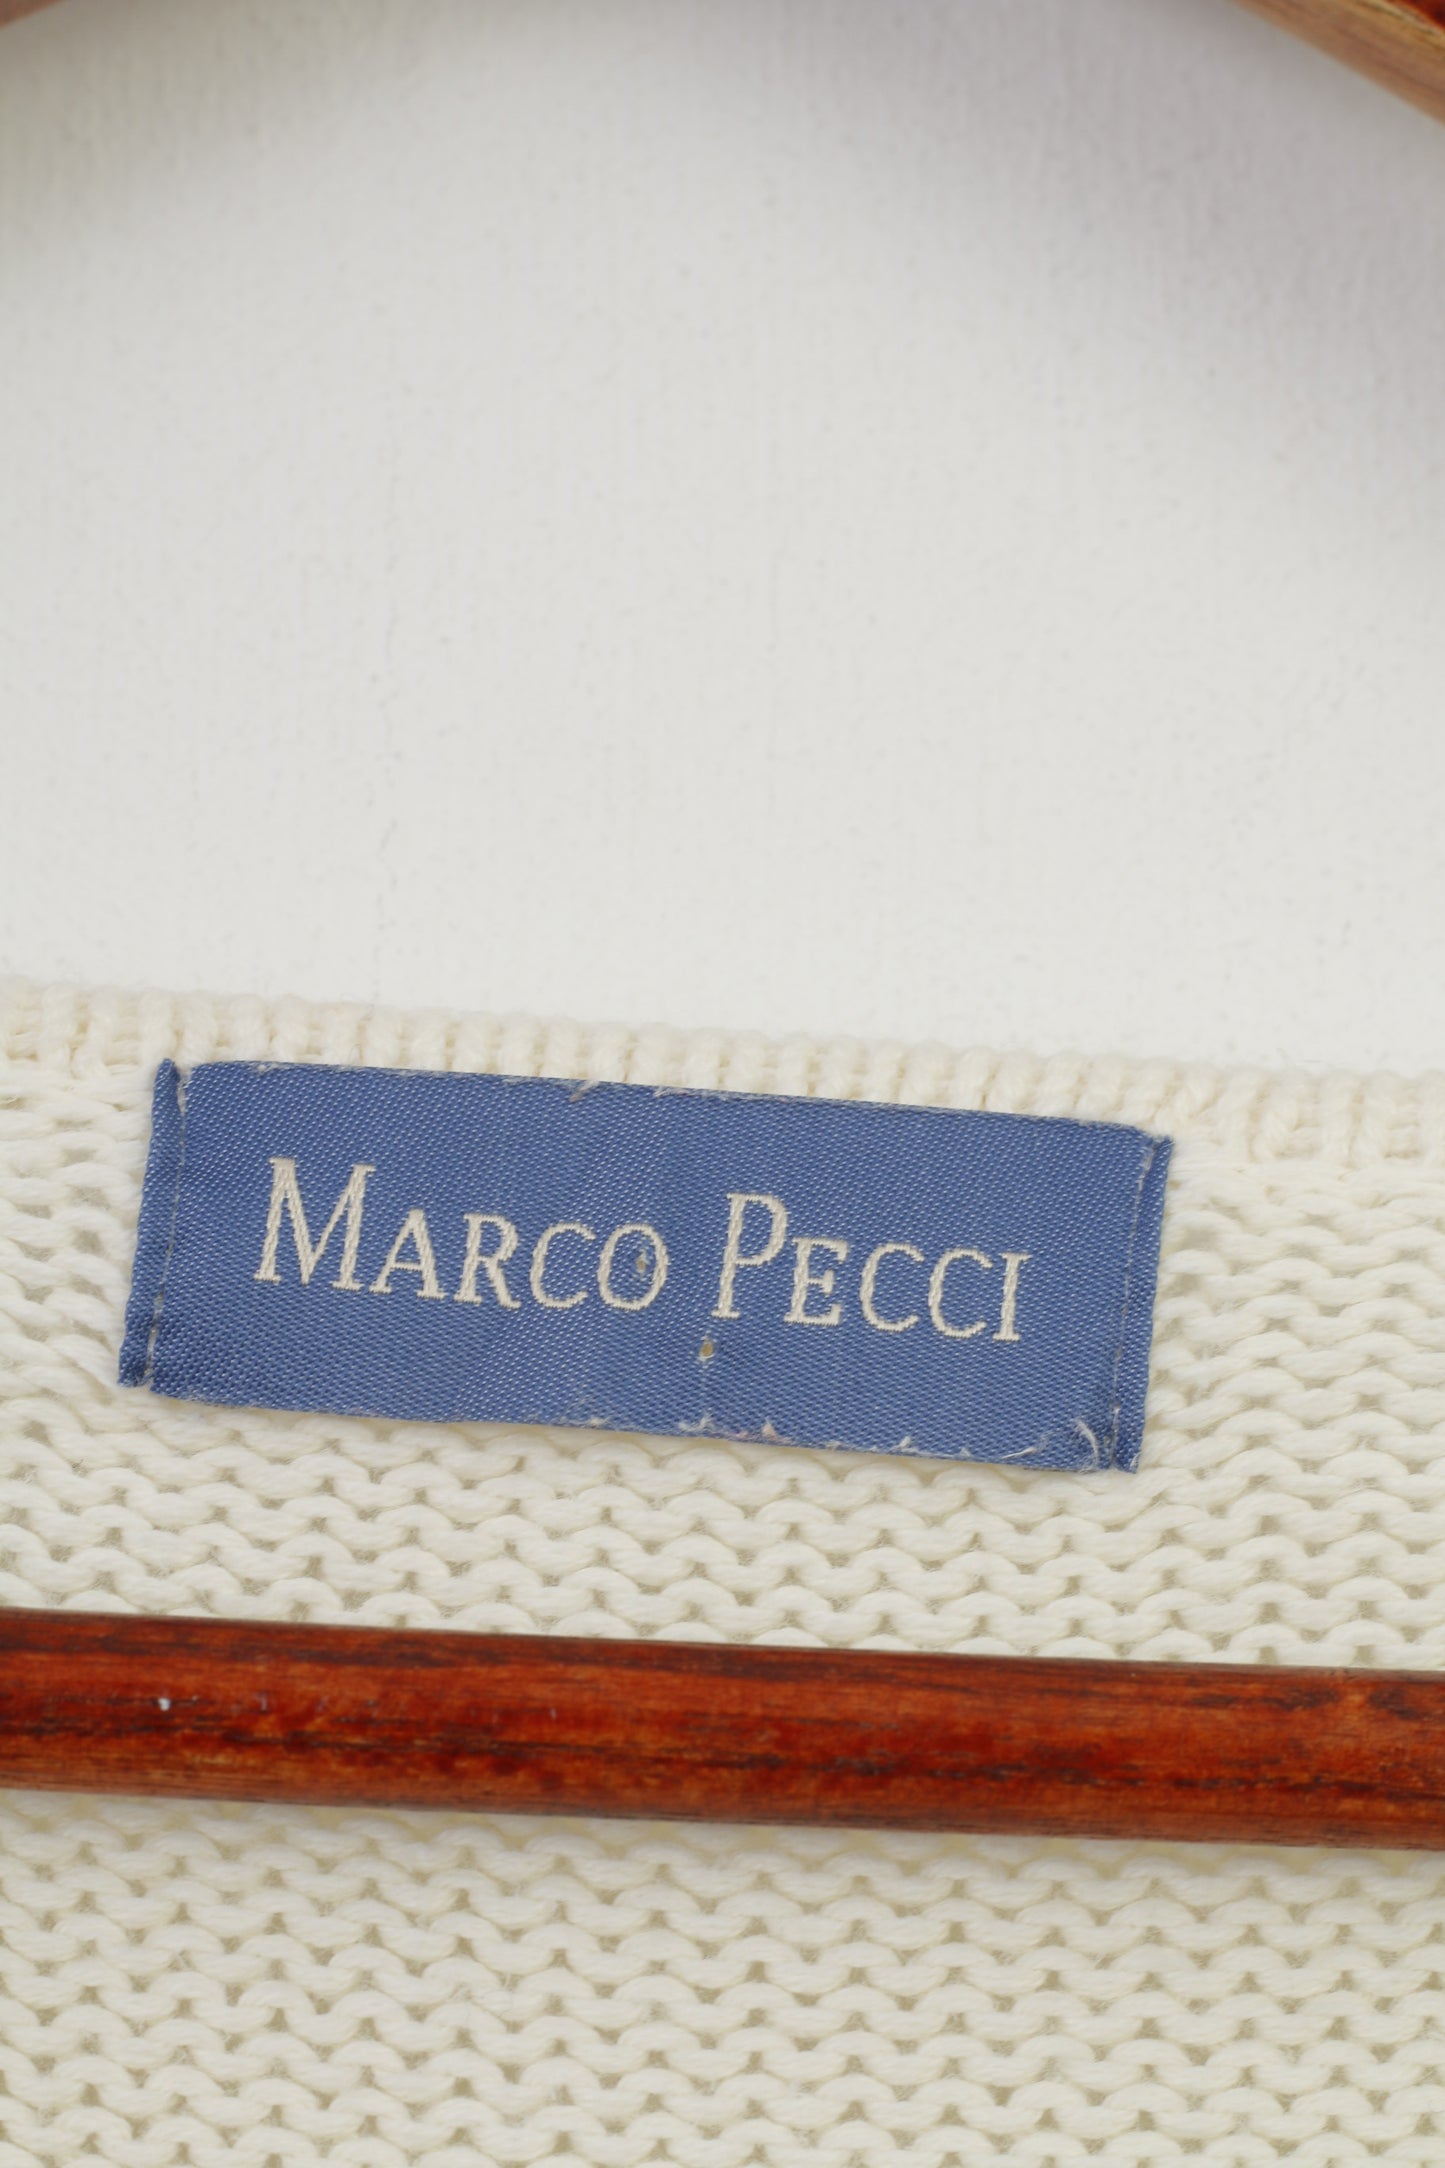 Marco Pecci Maglia Donna L Maglia Cardigan in Cotone Crema Manica Corta Maglione Vintage con Scollo a V